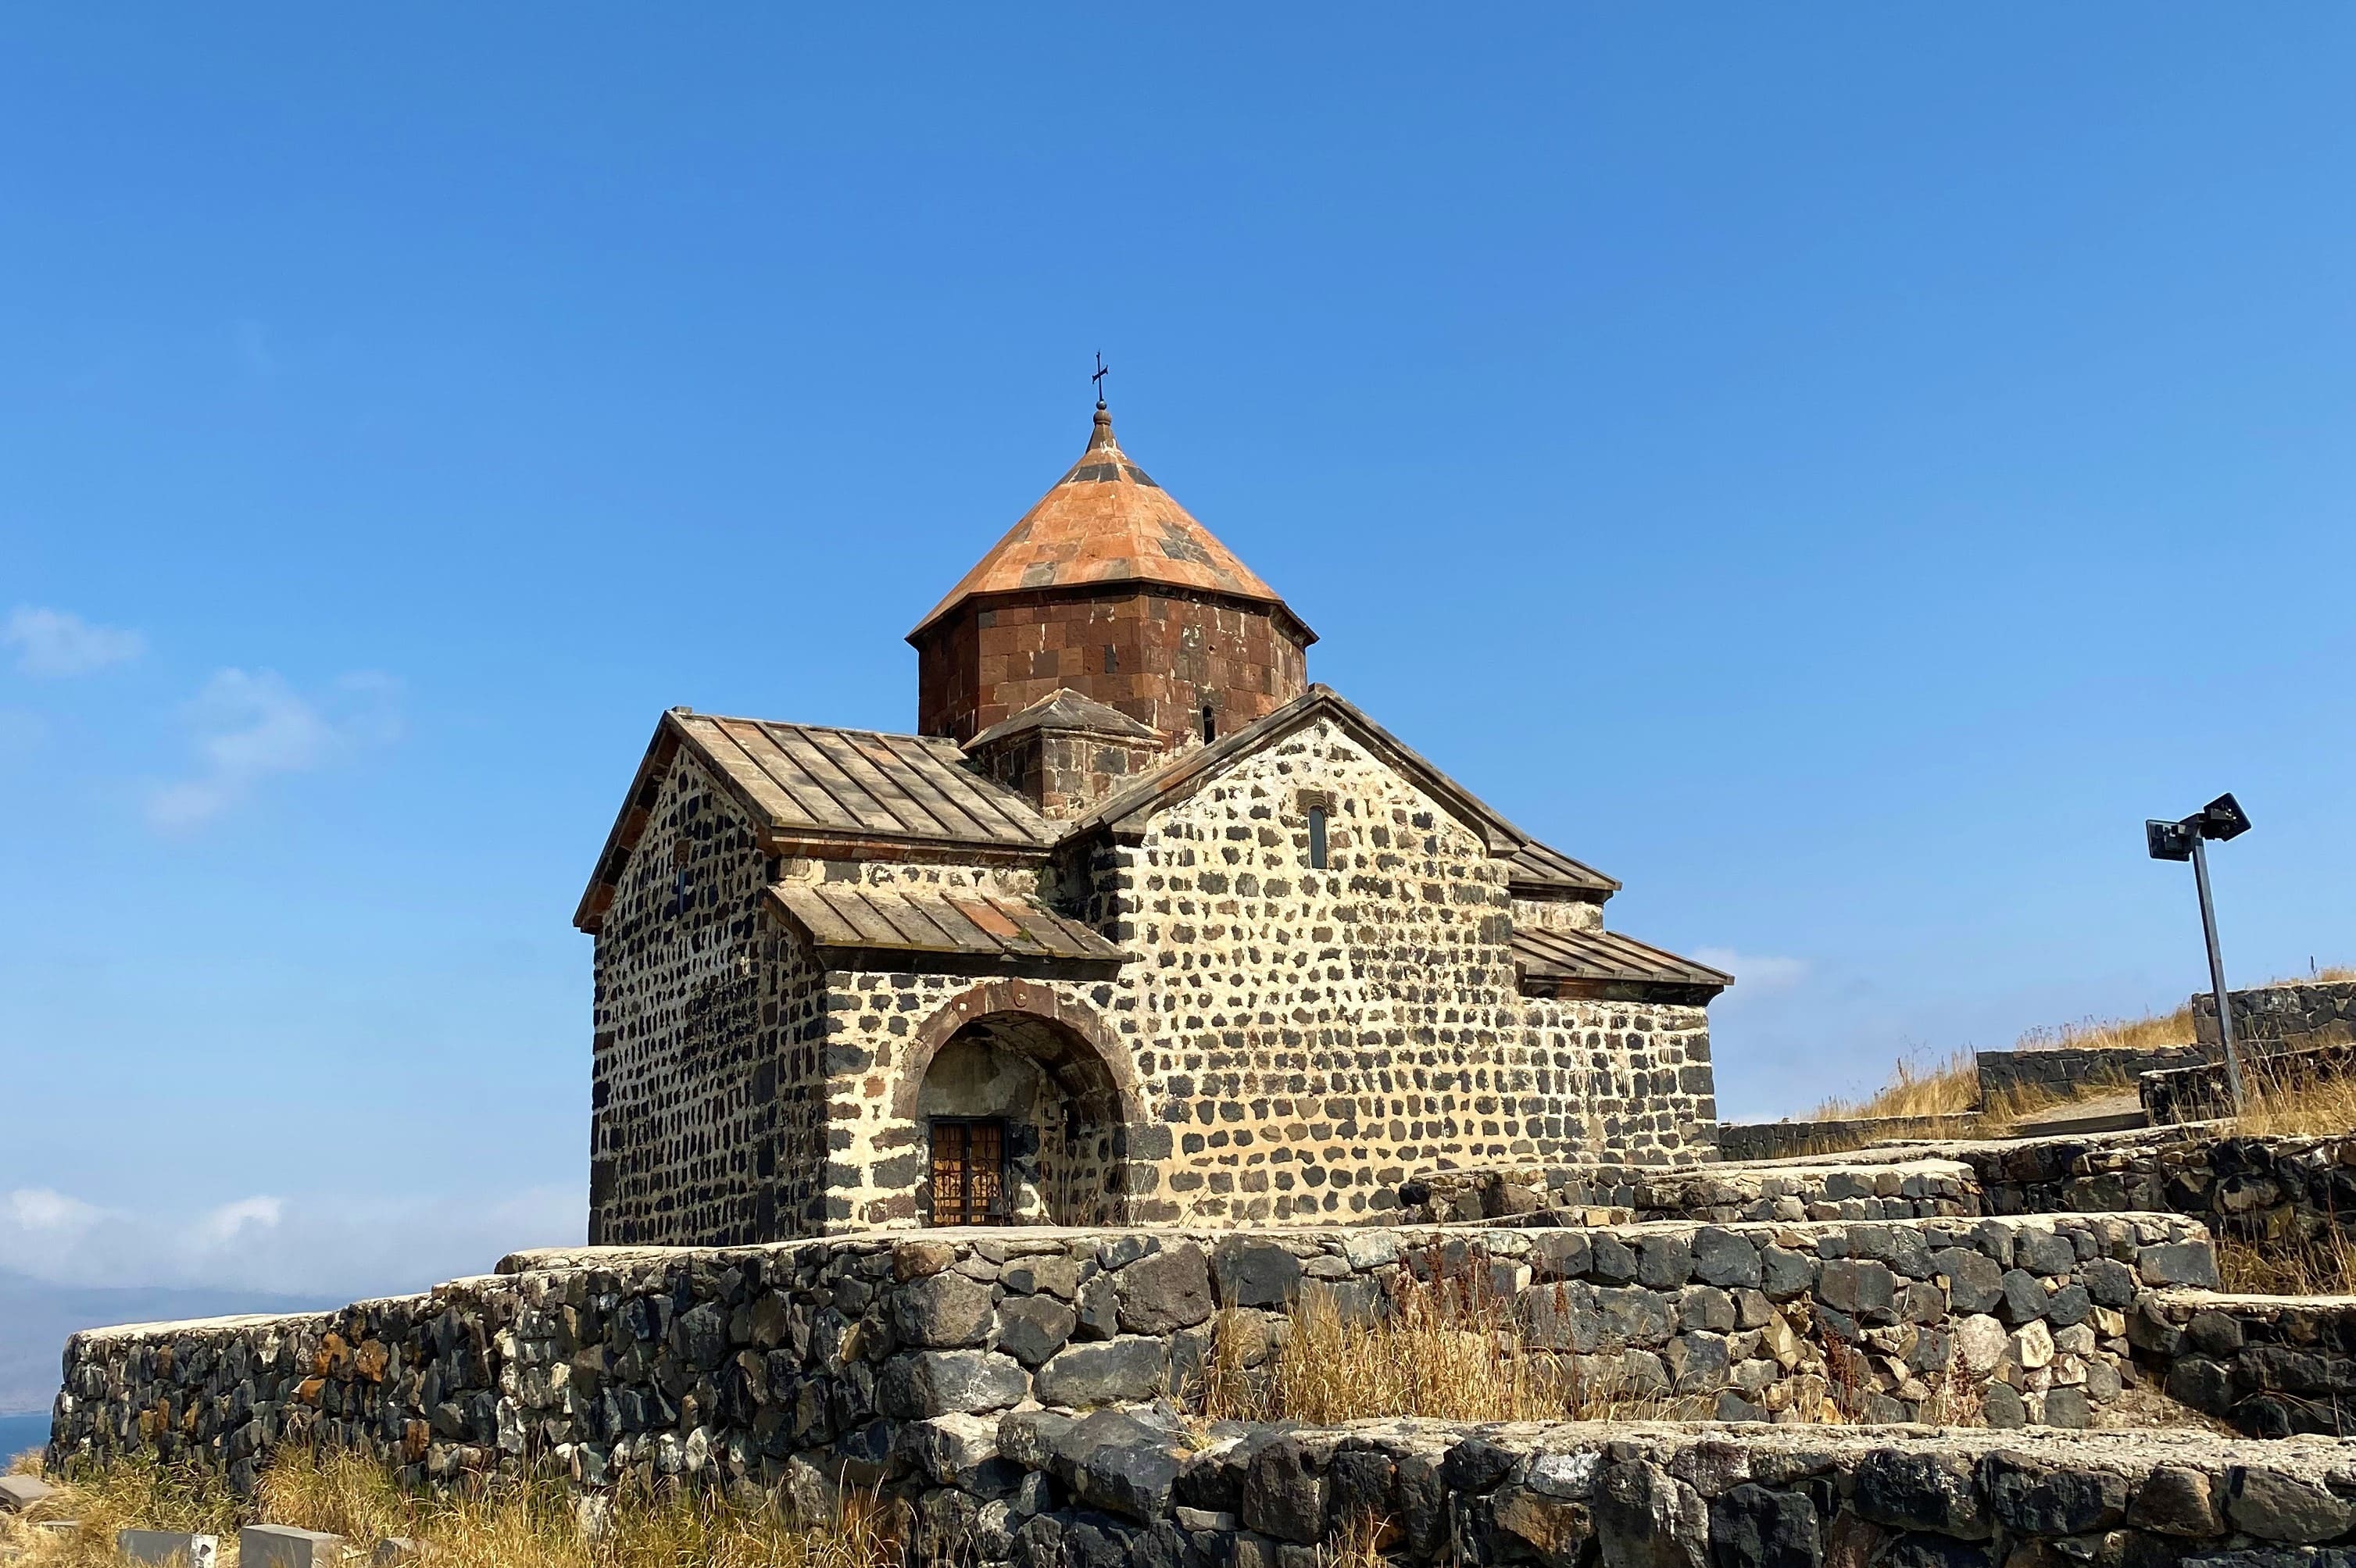 Армения древнее время